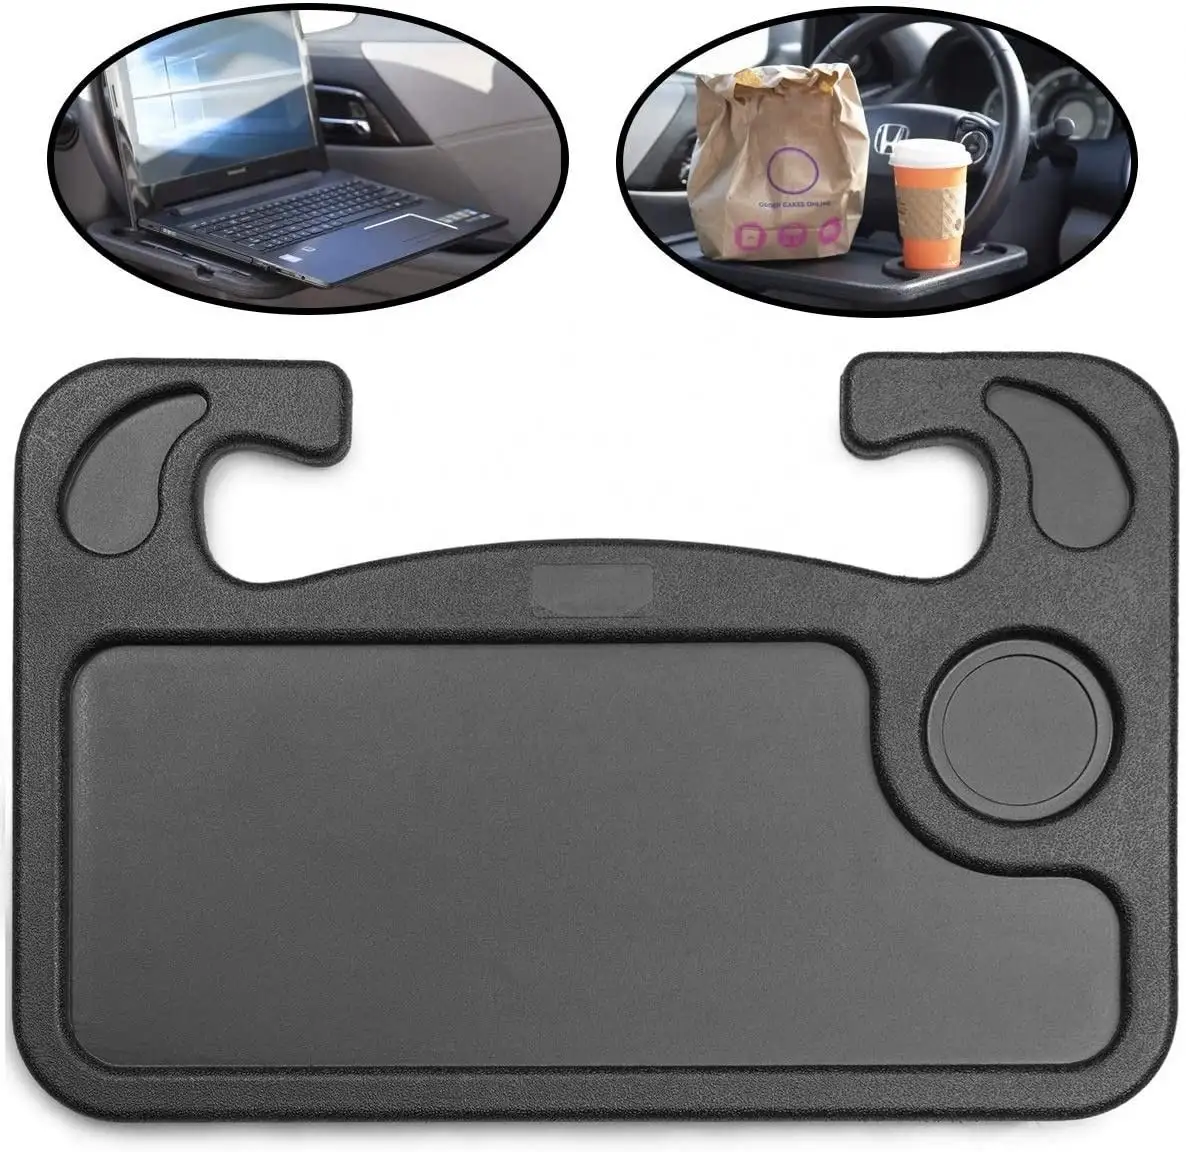 Spot goods gadget per Auto vassoio per Auto 1 pz tavolo mangiare/Laptop Auto volante scrivania per Tesla modello 3 modello Y S X